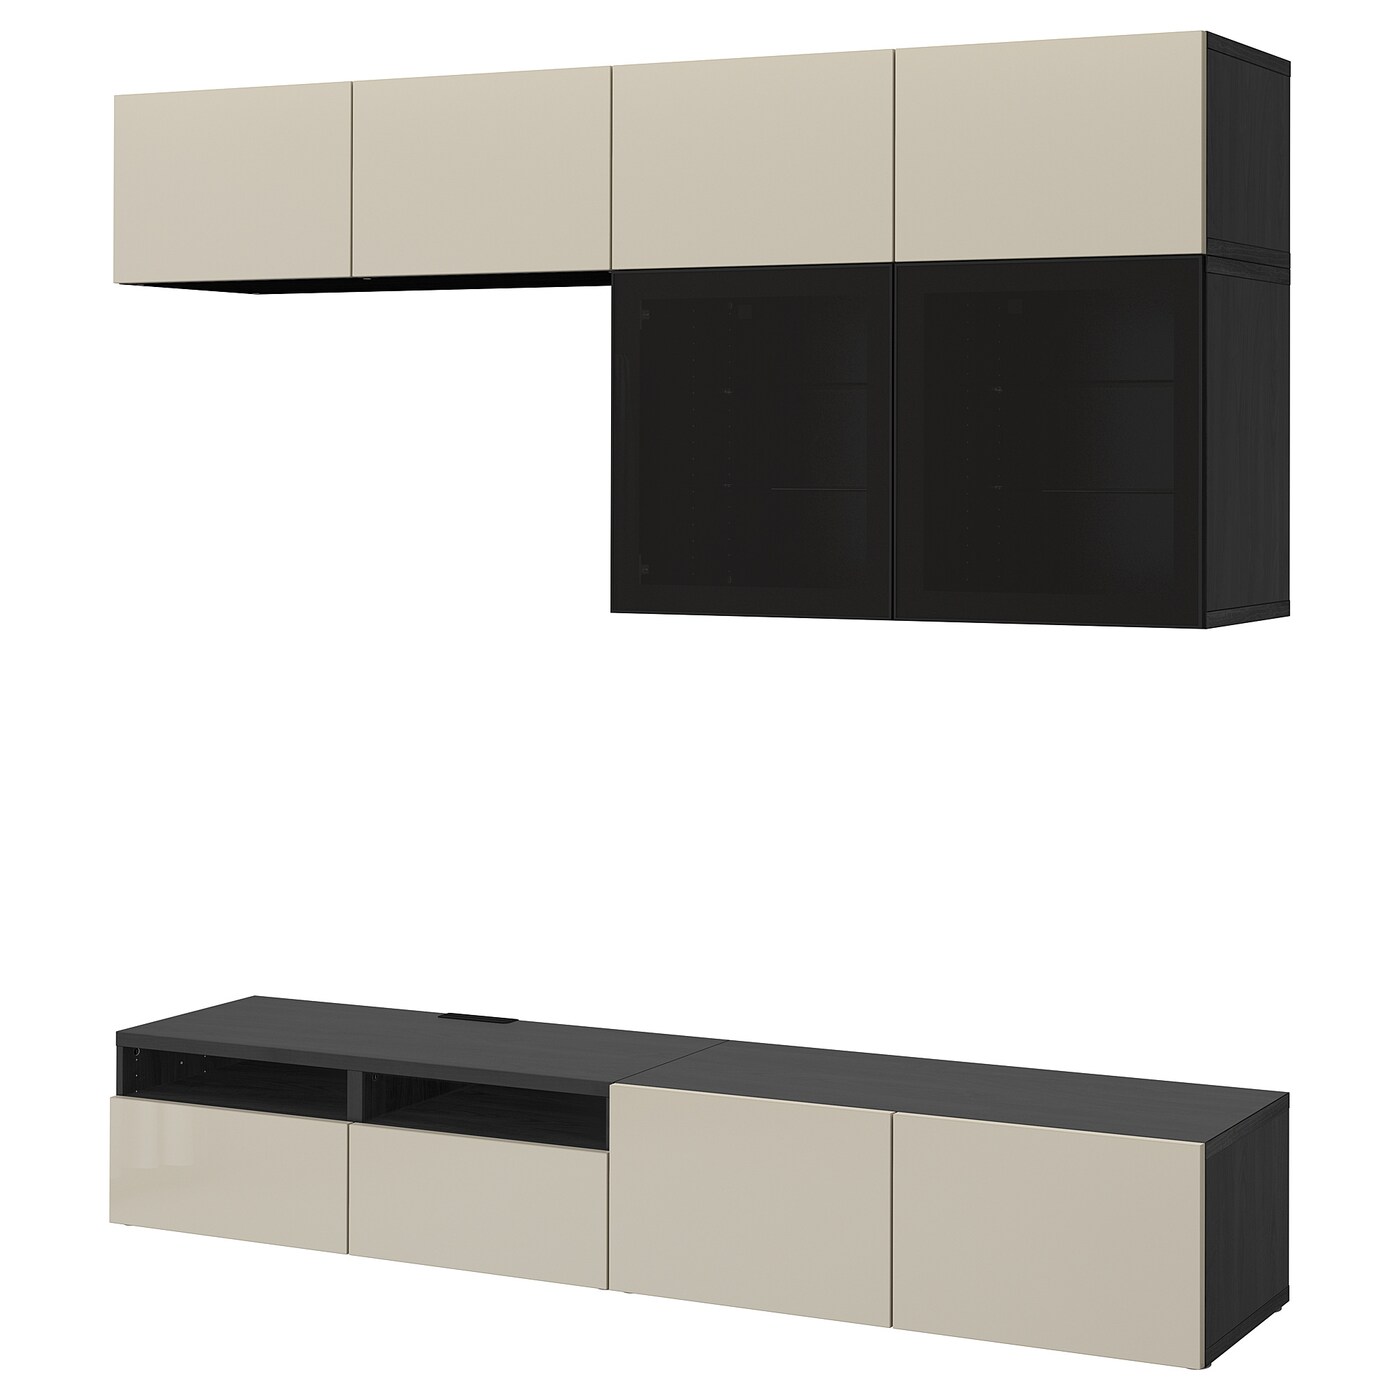 Комбинация для хранения ТВ - IKEA BESTÅ/BESTA, 231x42x240см, черный/светло-коричневый, БЕСТО ИКЕА